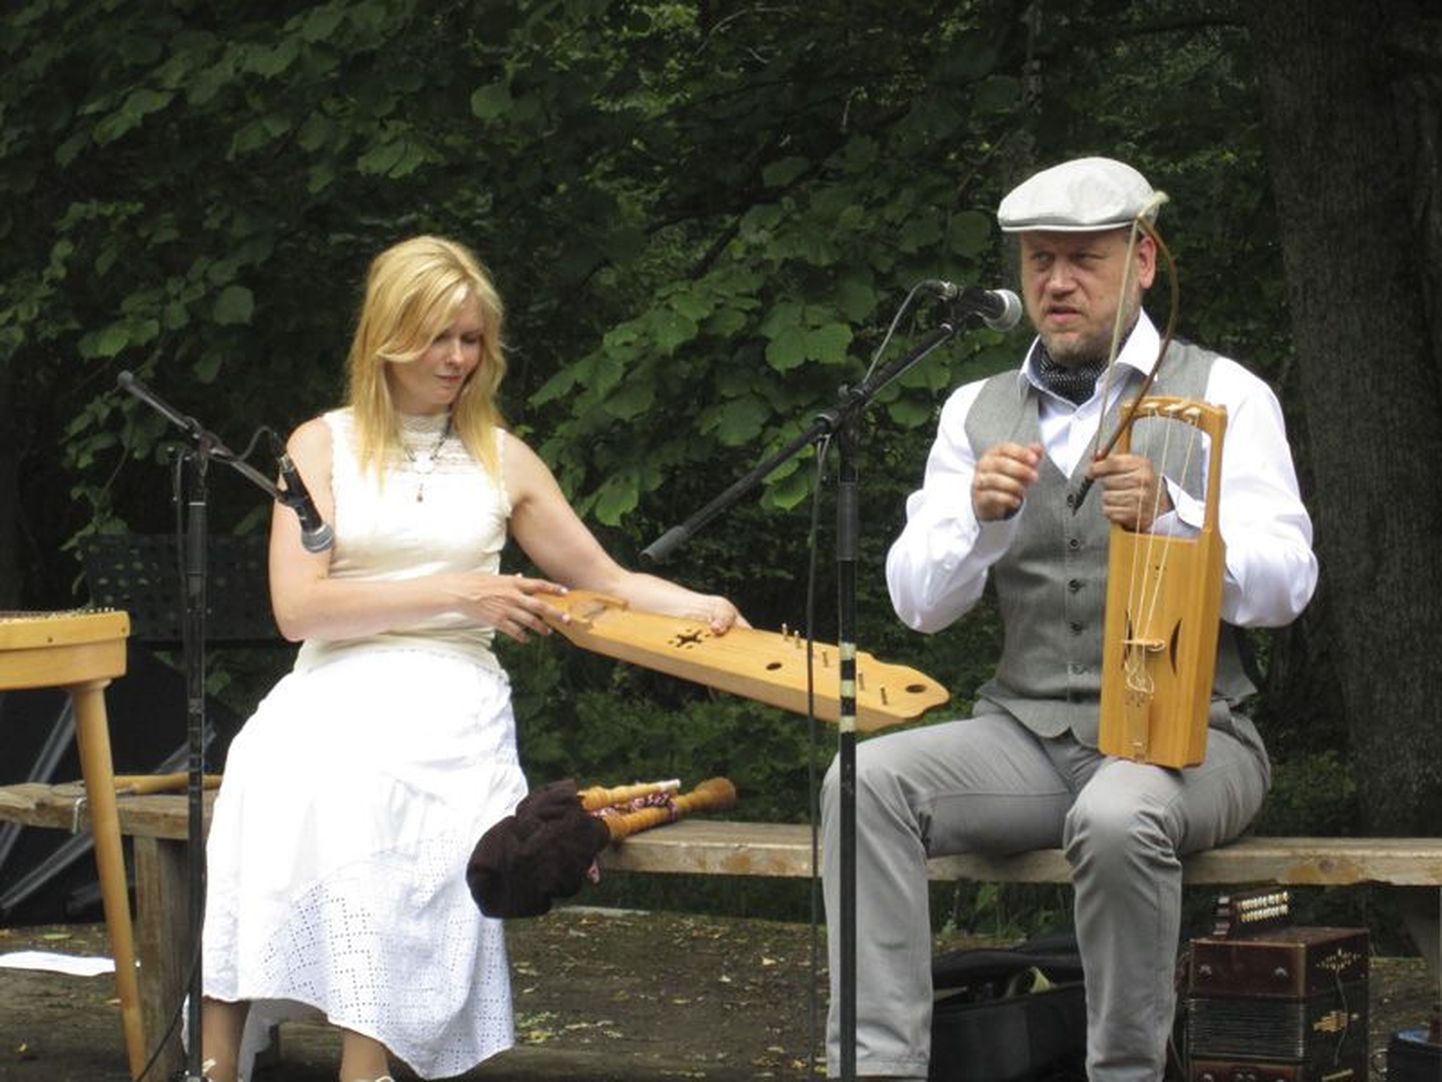 Rahvamuusikud Kaarin Aamer ja Jaanus Põlder tutvustasid Rohu 
küla päeval pärimusmuusikat ja rahvapille.